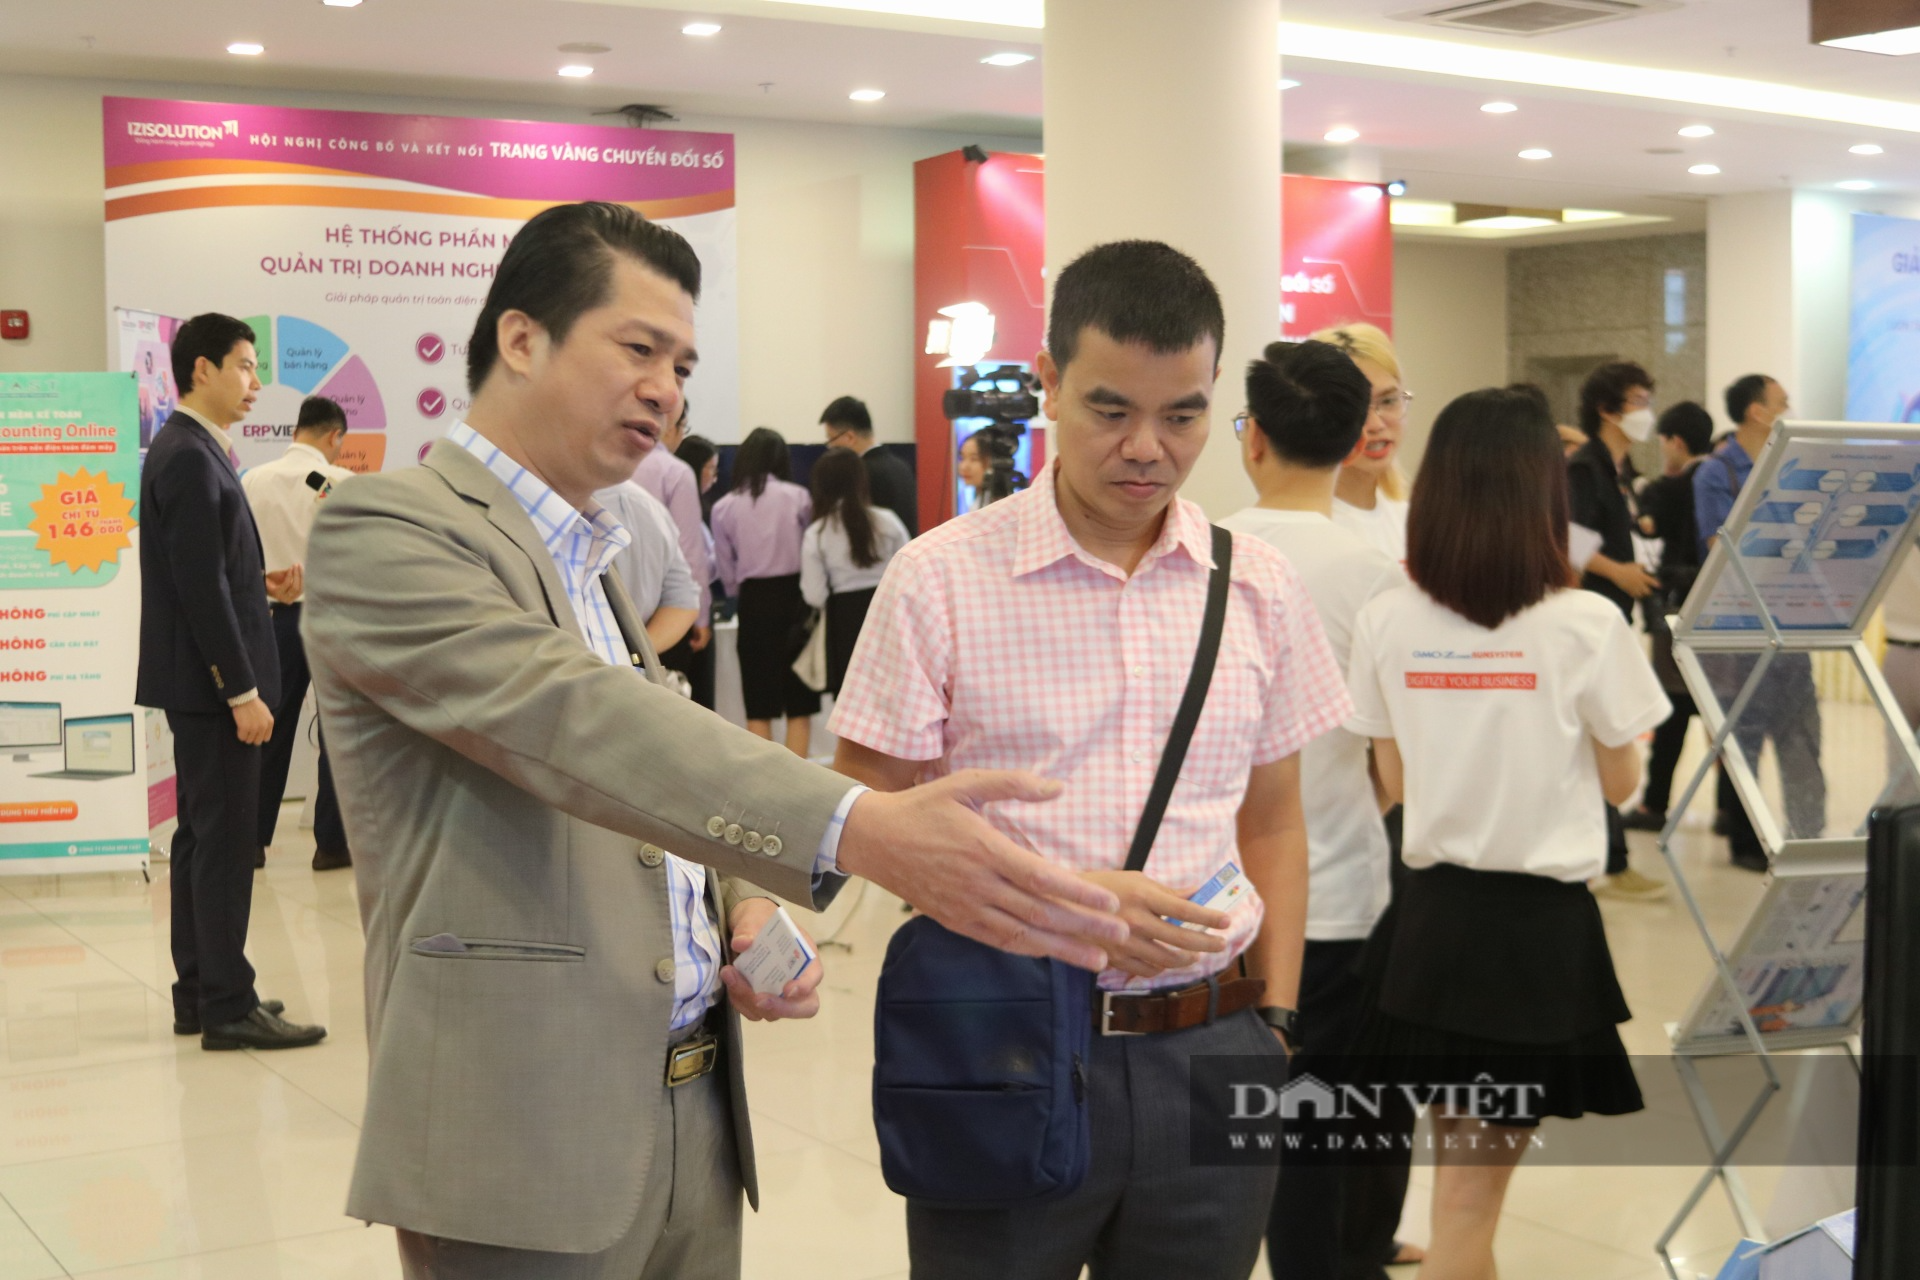 Lần đầu công bố Trang vàng giải pháp chuyển đổi số cho doanh nghiệp Việt Nam - Ảnh 6.